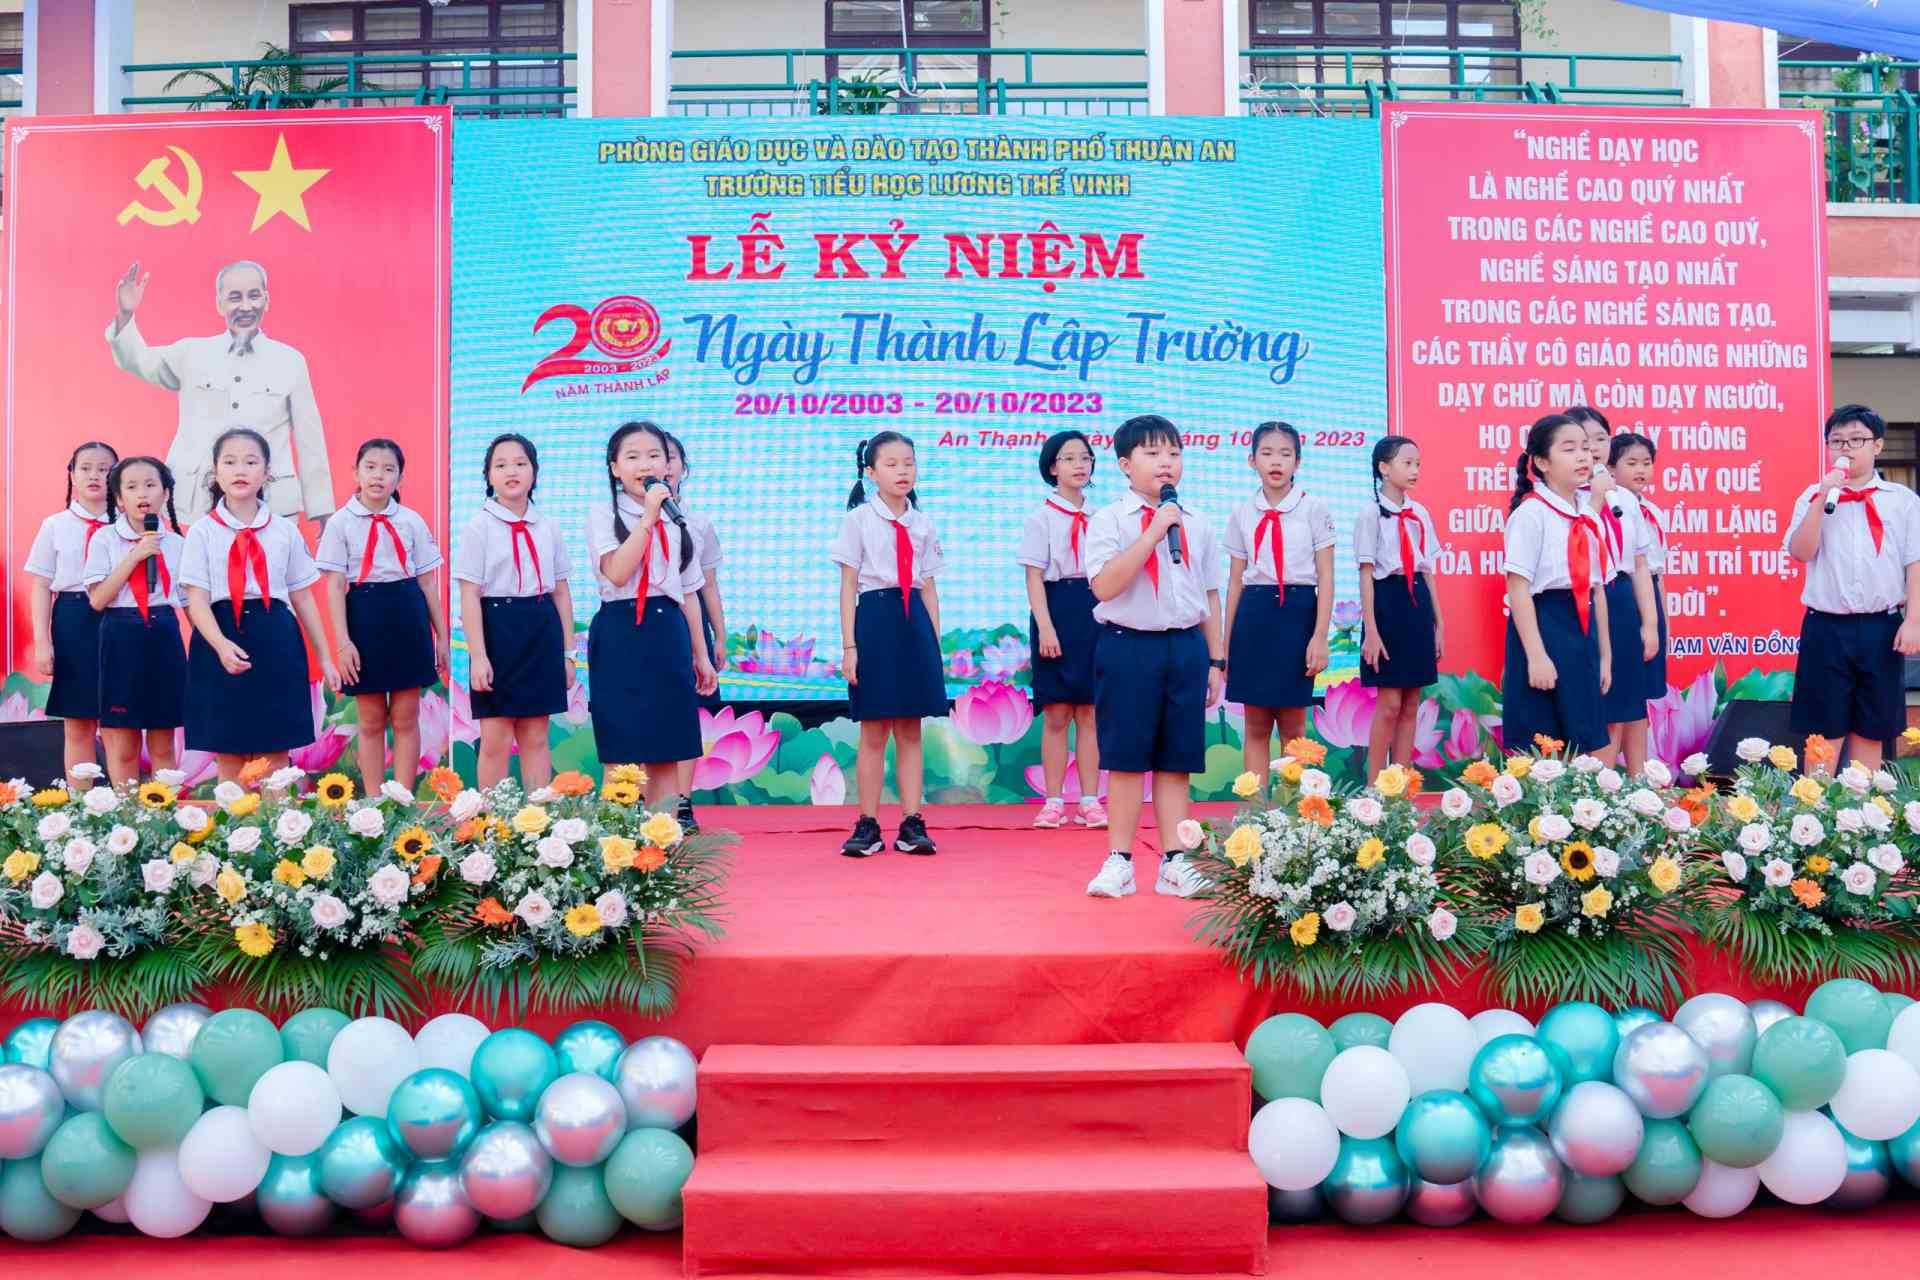 Các em học sinh trường TH Lương Thế Vinh biểu diễn bài hát truyền thống của nhà trường - Yêu sao mái trường Lương Thế Vinh